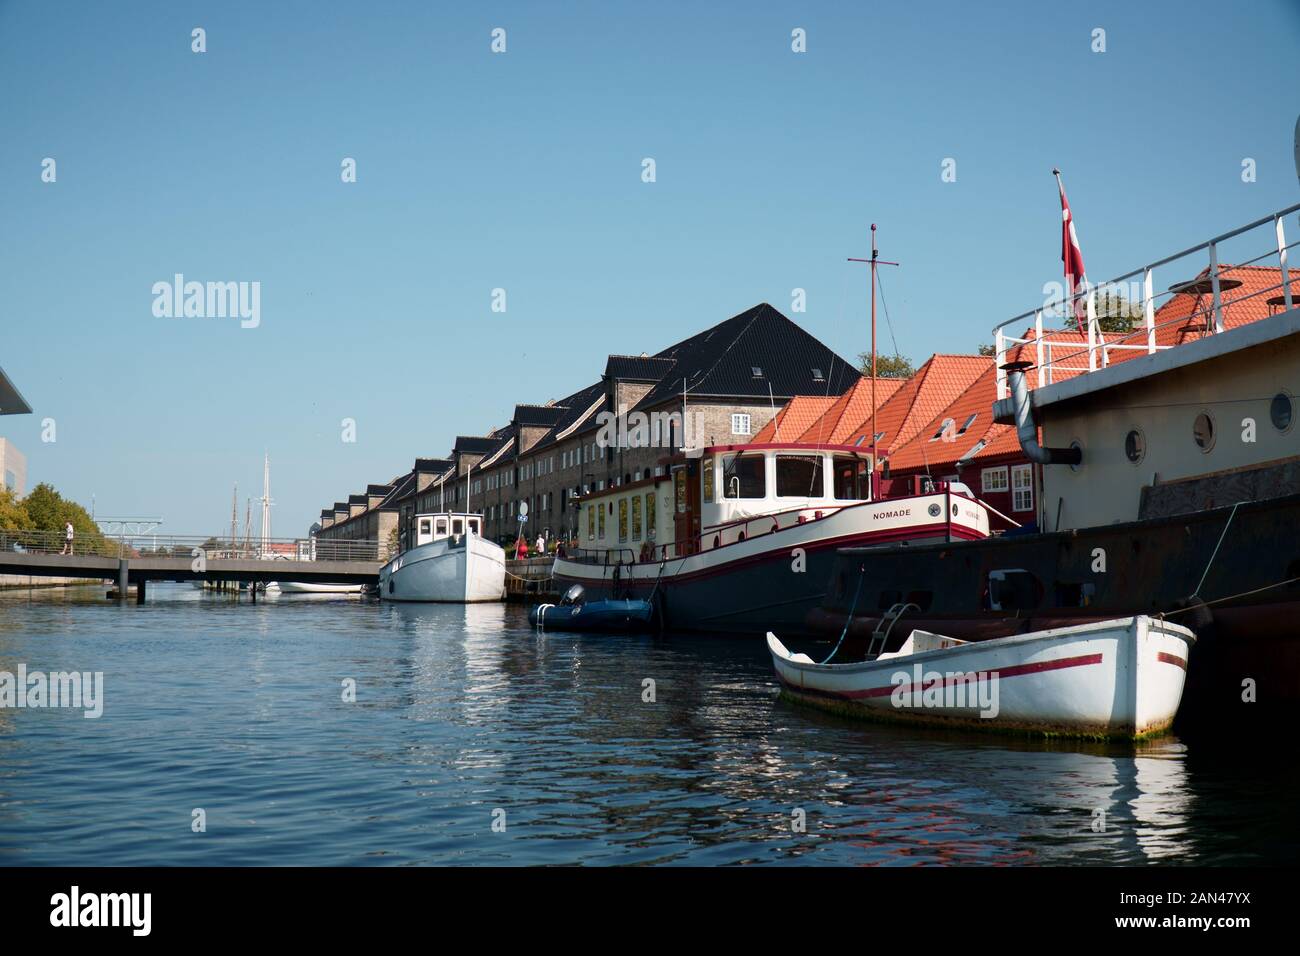 Boats in canal in Copenhagen, Denmark Stock Photo